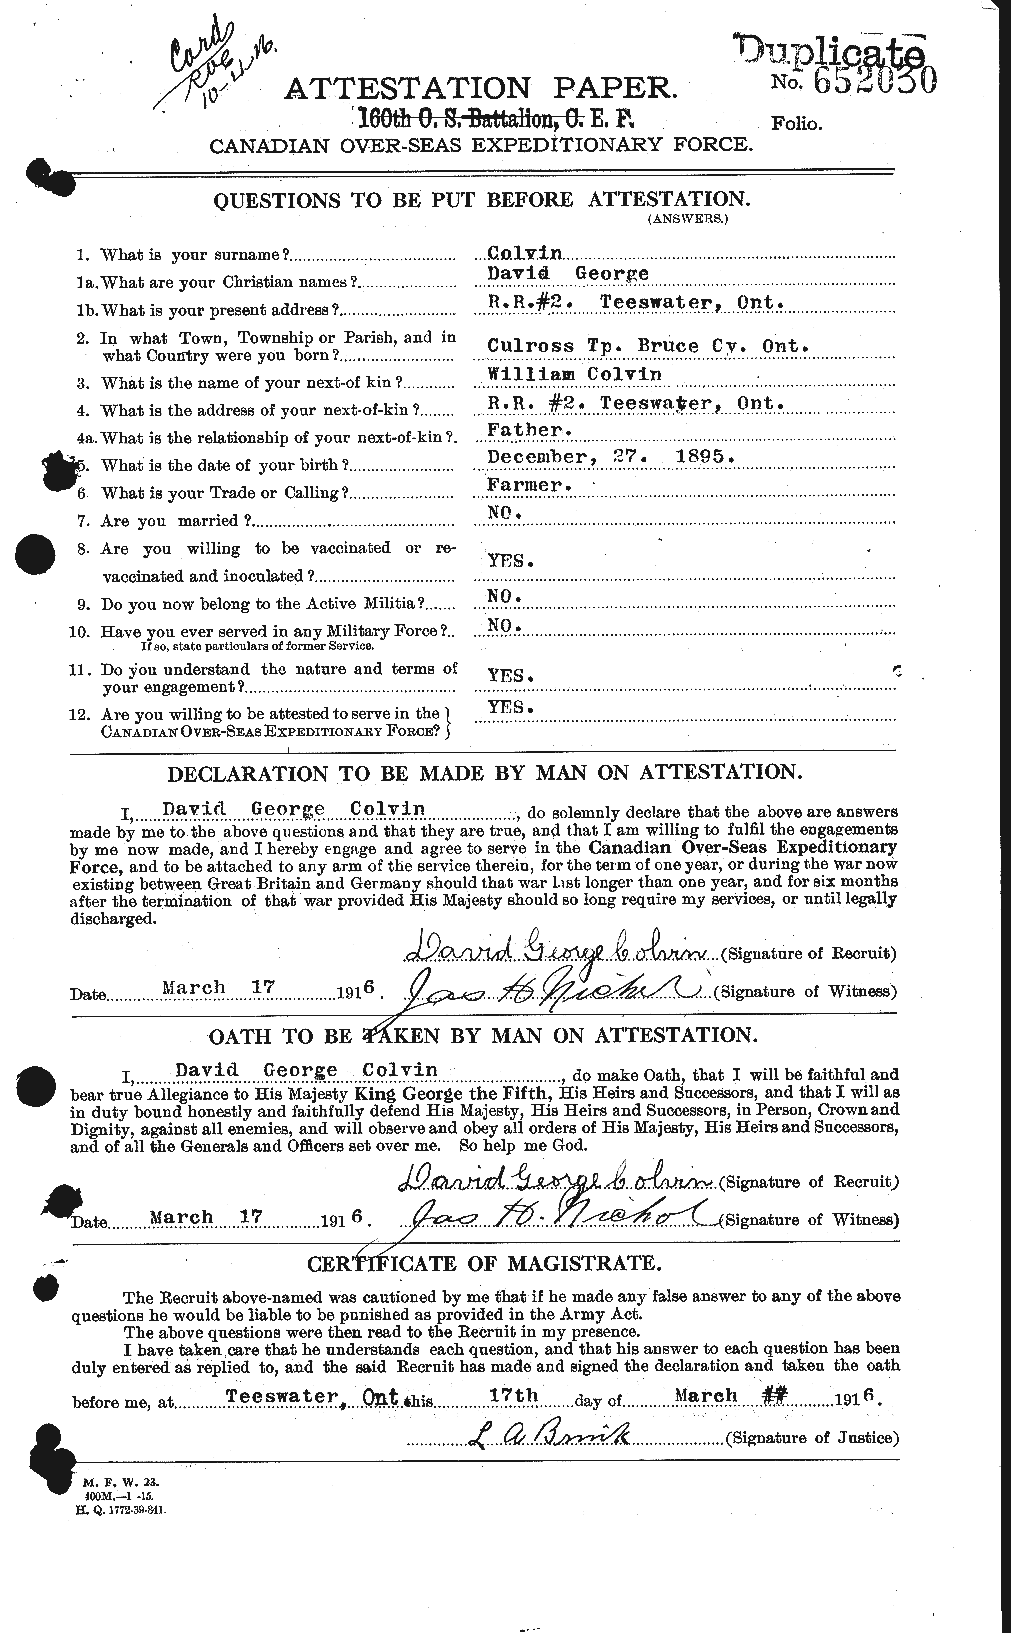 Dossiers du Personnel de la Première Guerre mondiale - CEC 071908a